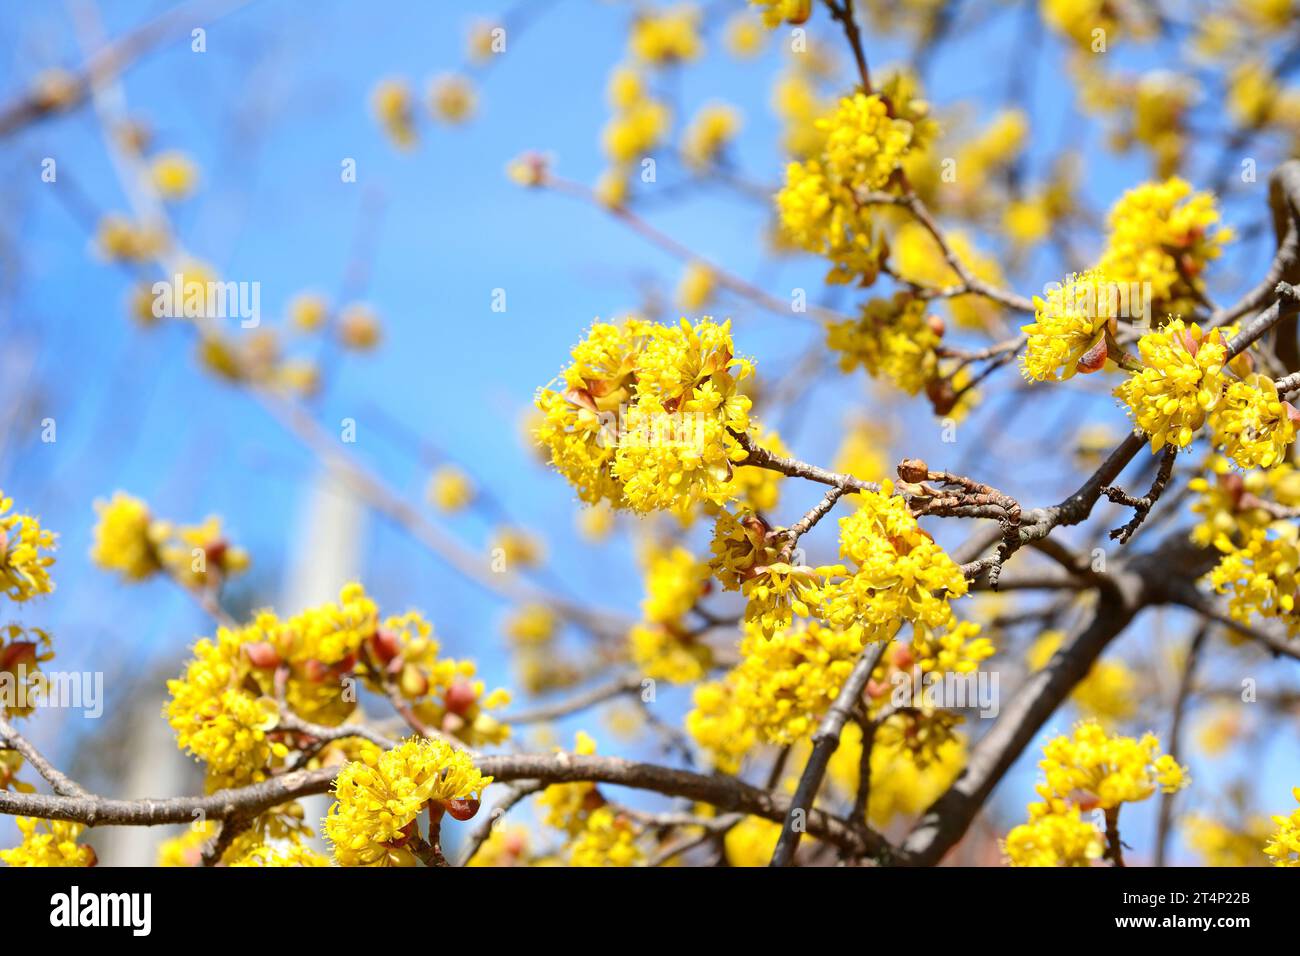 Branches avec fleurs de Cornel européen (Cornus mas) au début du printemps. Cerisier de Cornouailles, cornel d'Europe ou cornouiller de cerisier de Cornouailles (Cornus mas) flov Banque D'Images